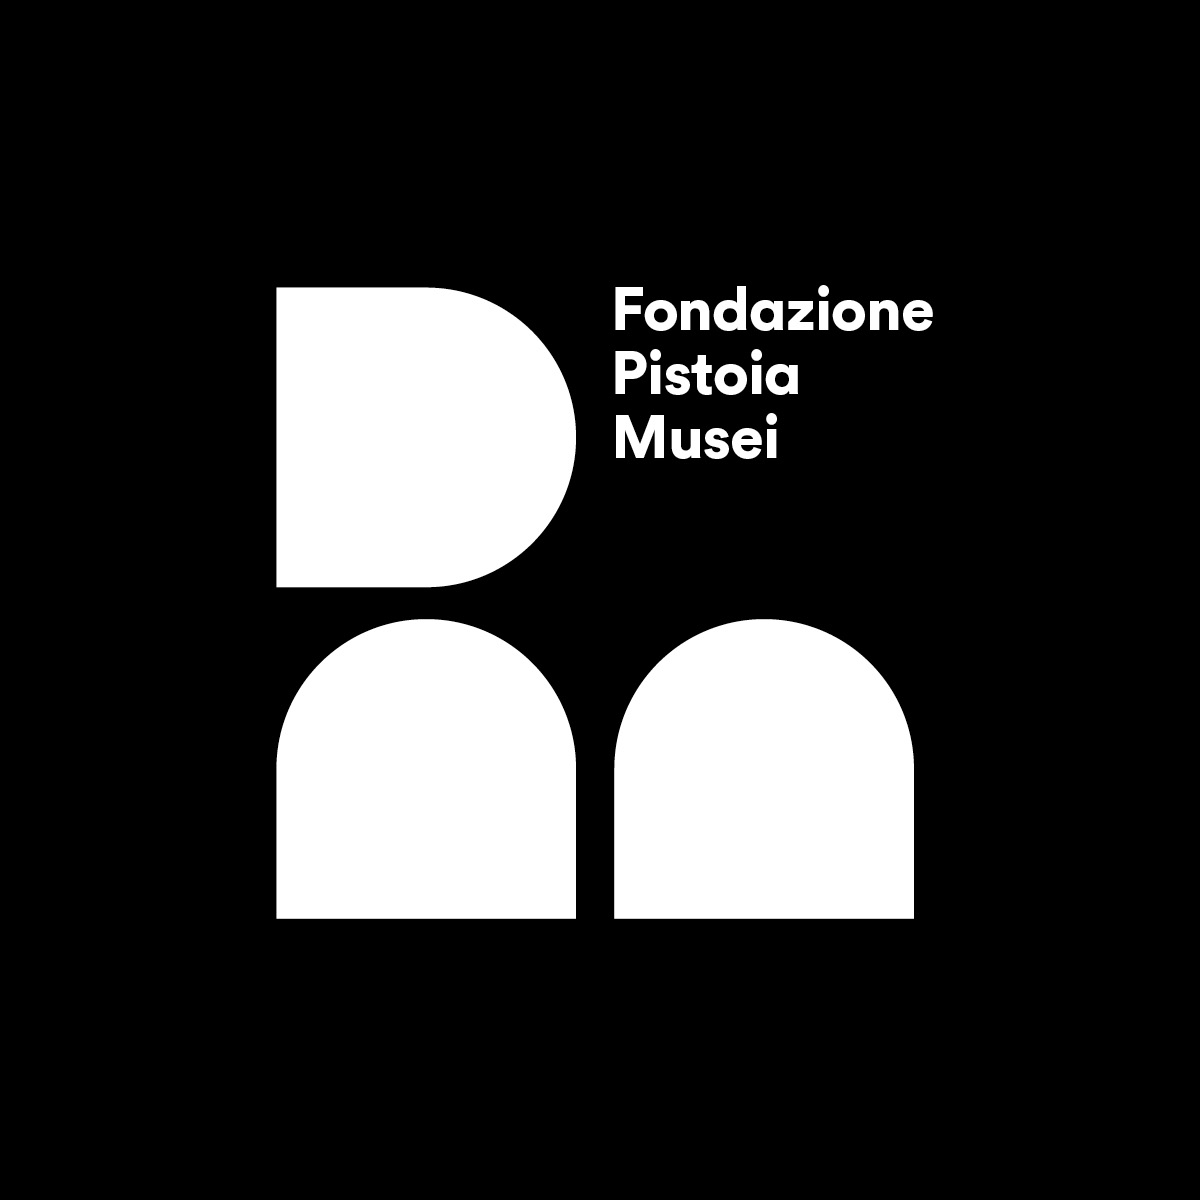 Fondazione-Pistoia-Musei-002 